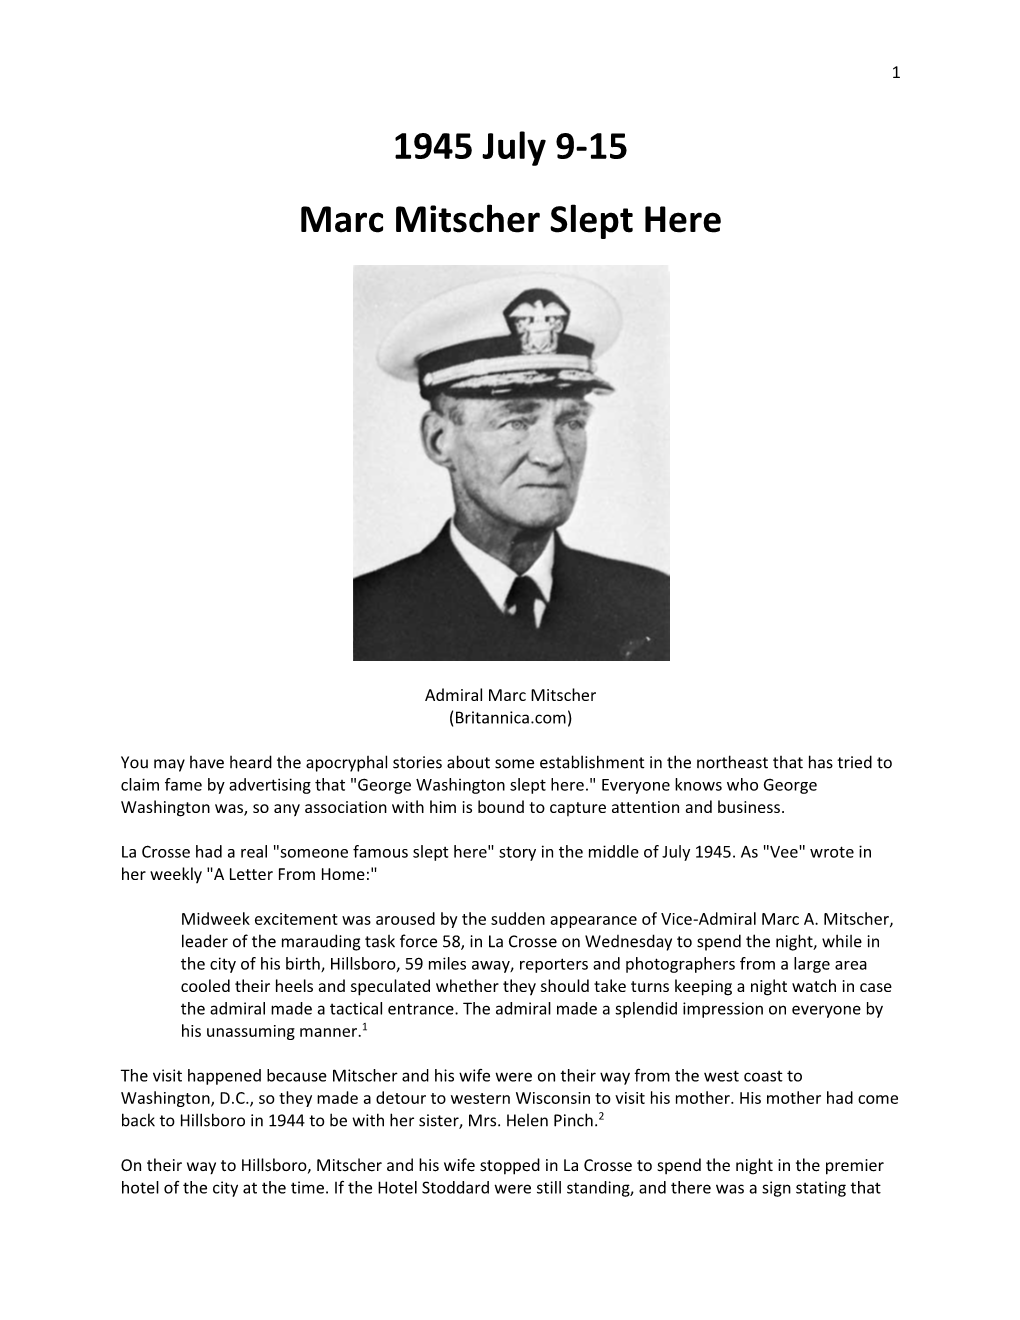 1945 July 9-15 Marc Mitscher Slept Here